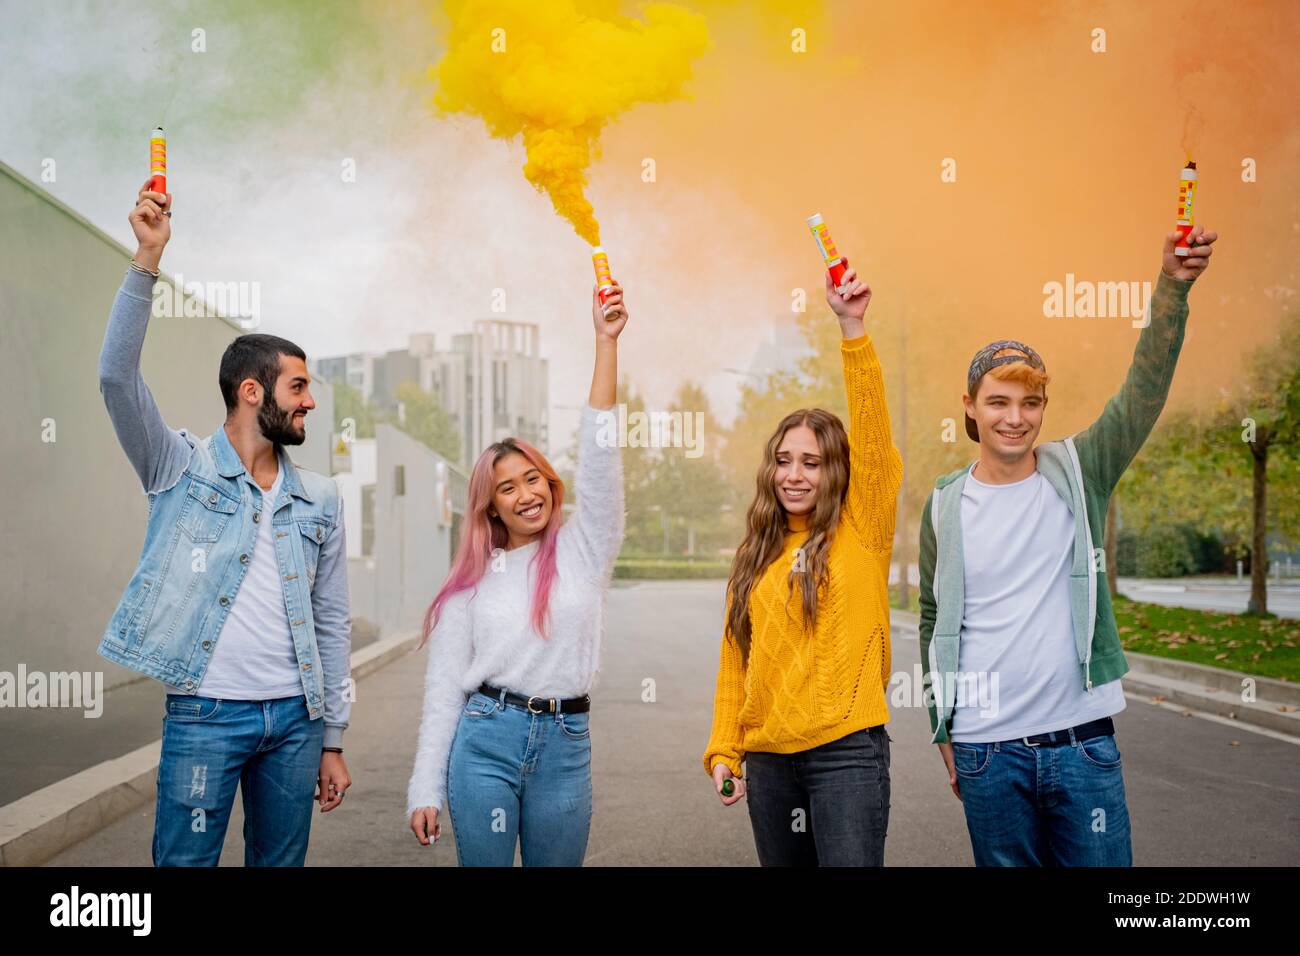 De beaux jeunes gens se tiennent dans la rue et tiennent la lumière de couleur Bombes de fumée - des amis heureux s'amuser dans la rue avec des bombes de fumée multicolores Banque D'Images